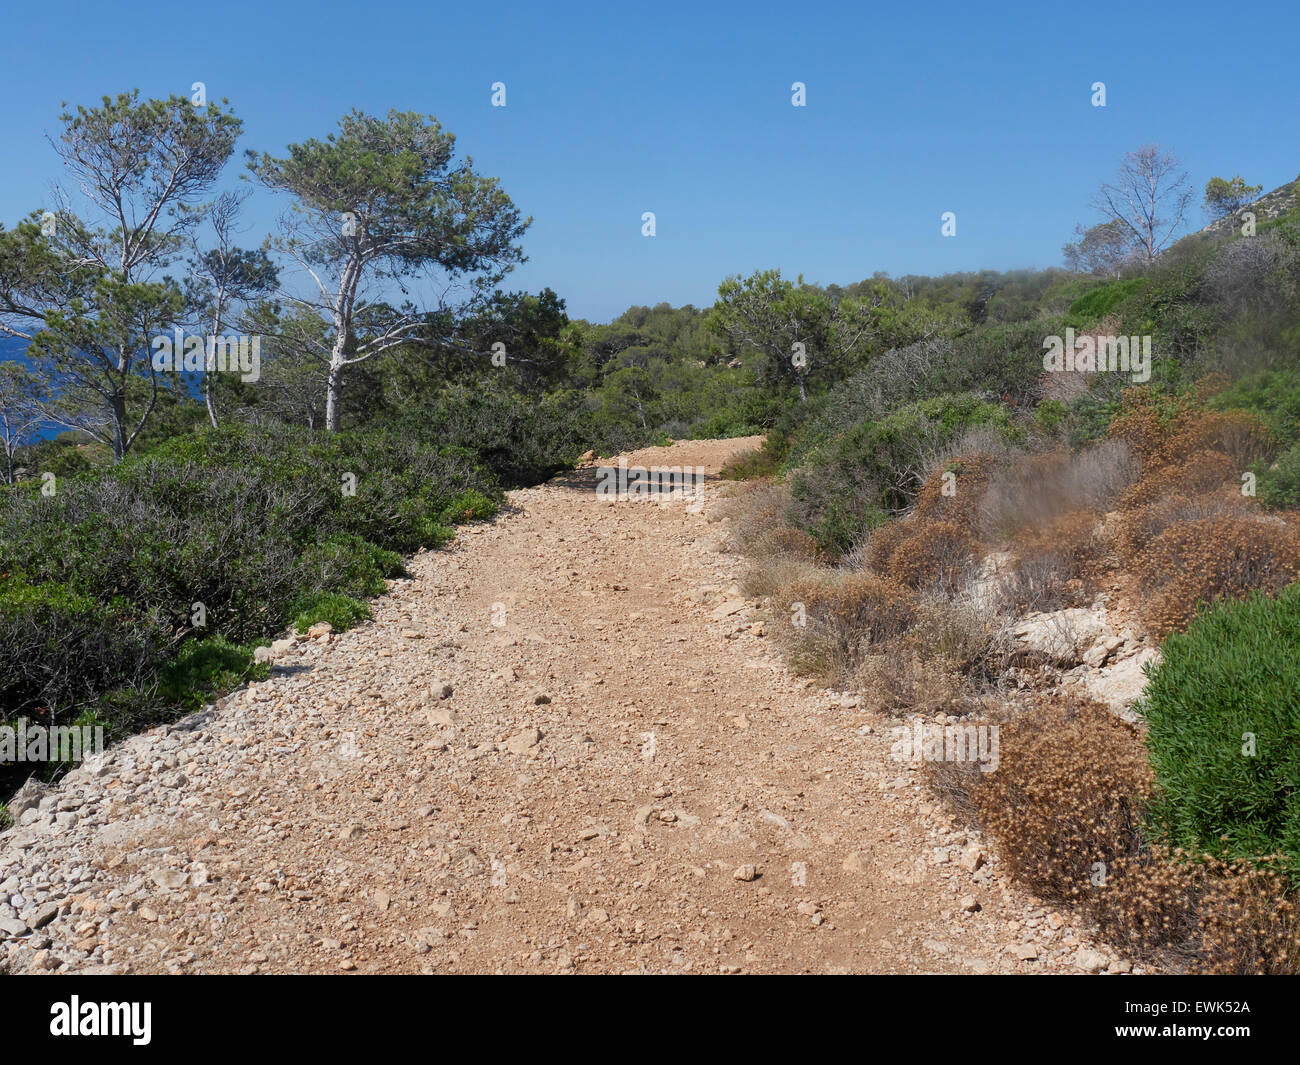 Illa Dragonera, de l'ornithologie site, Majorque, Juin 2015 Banque D'Images